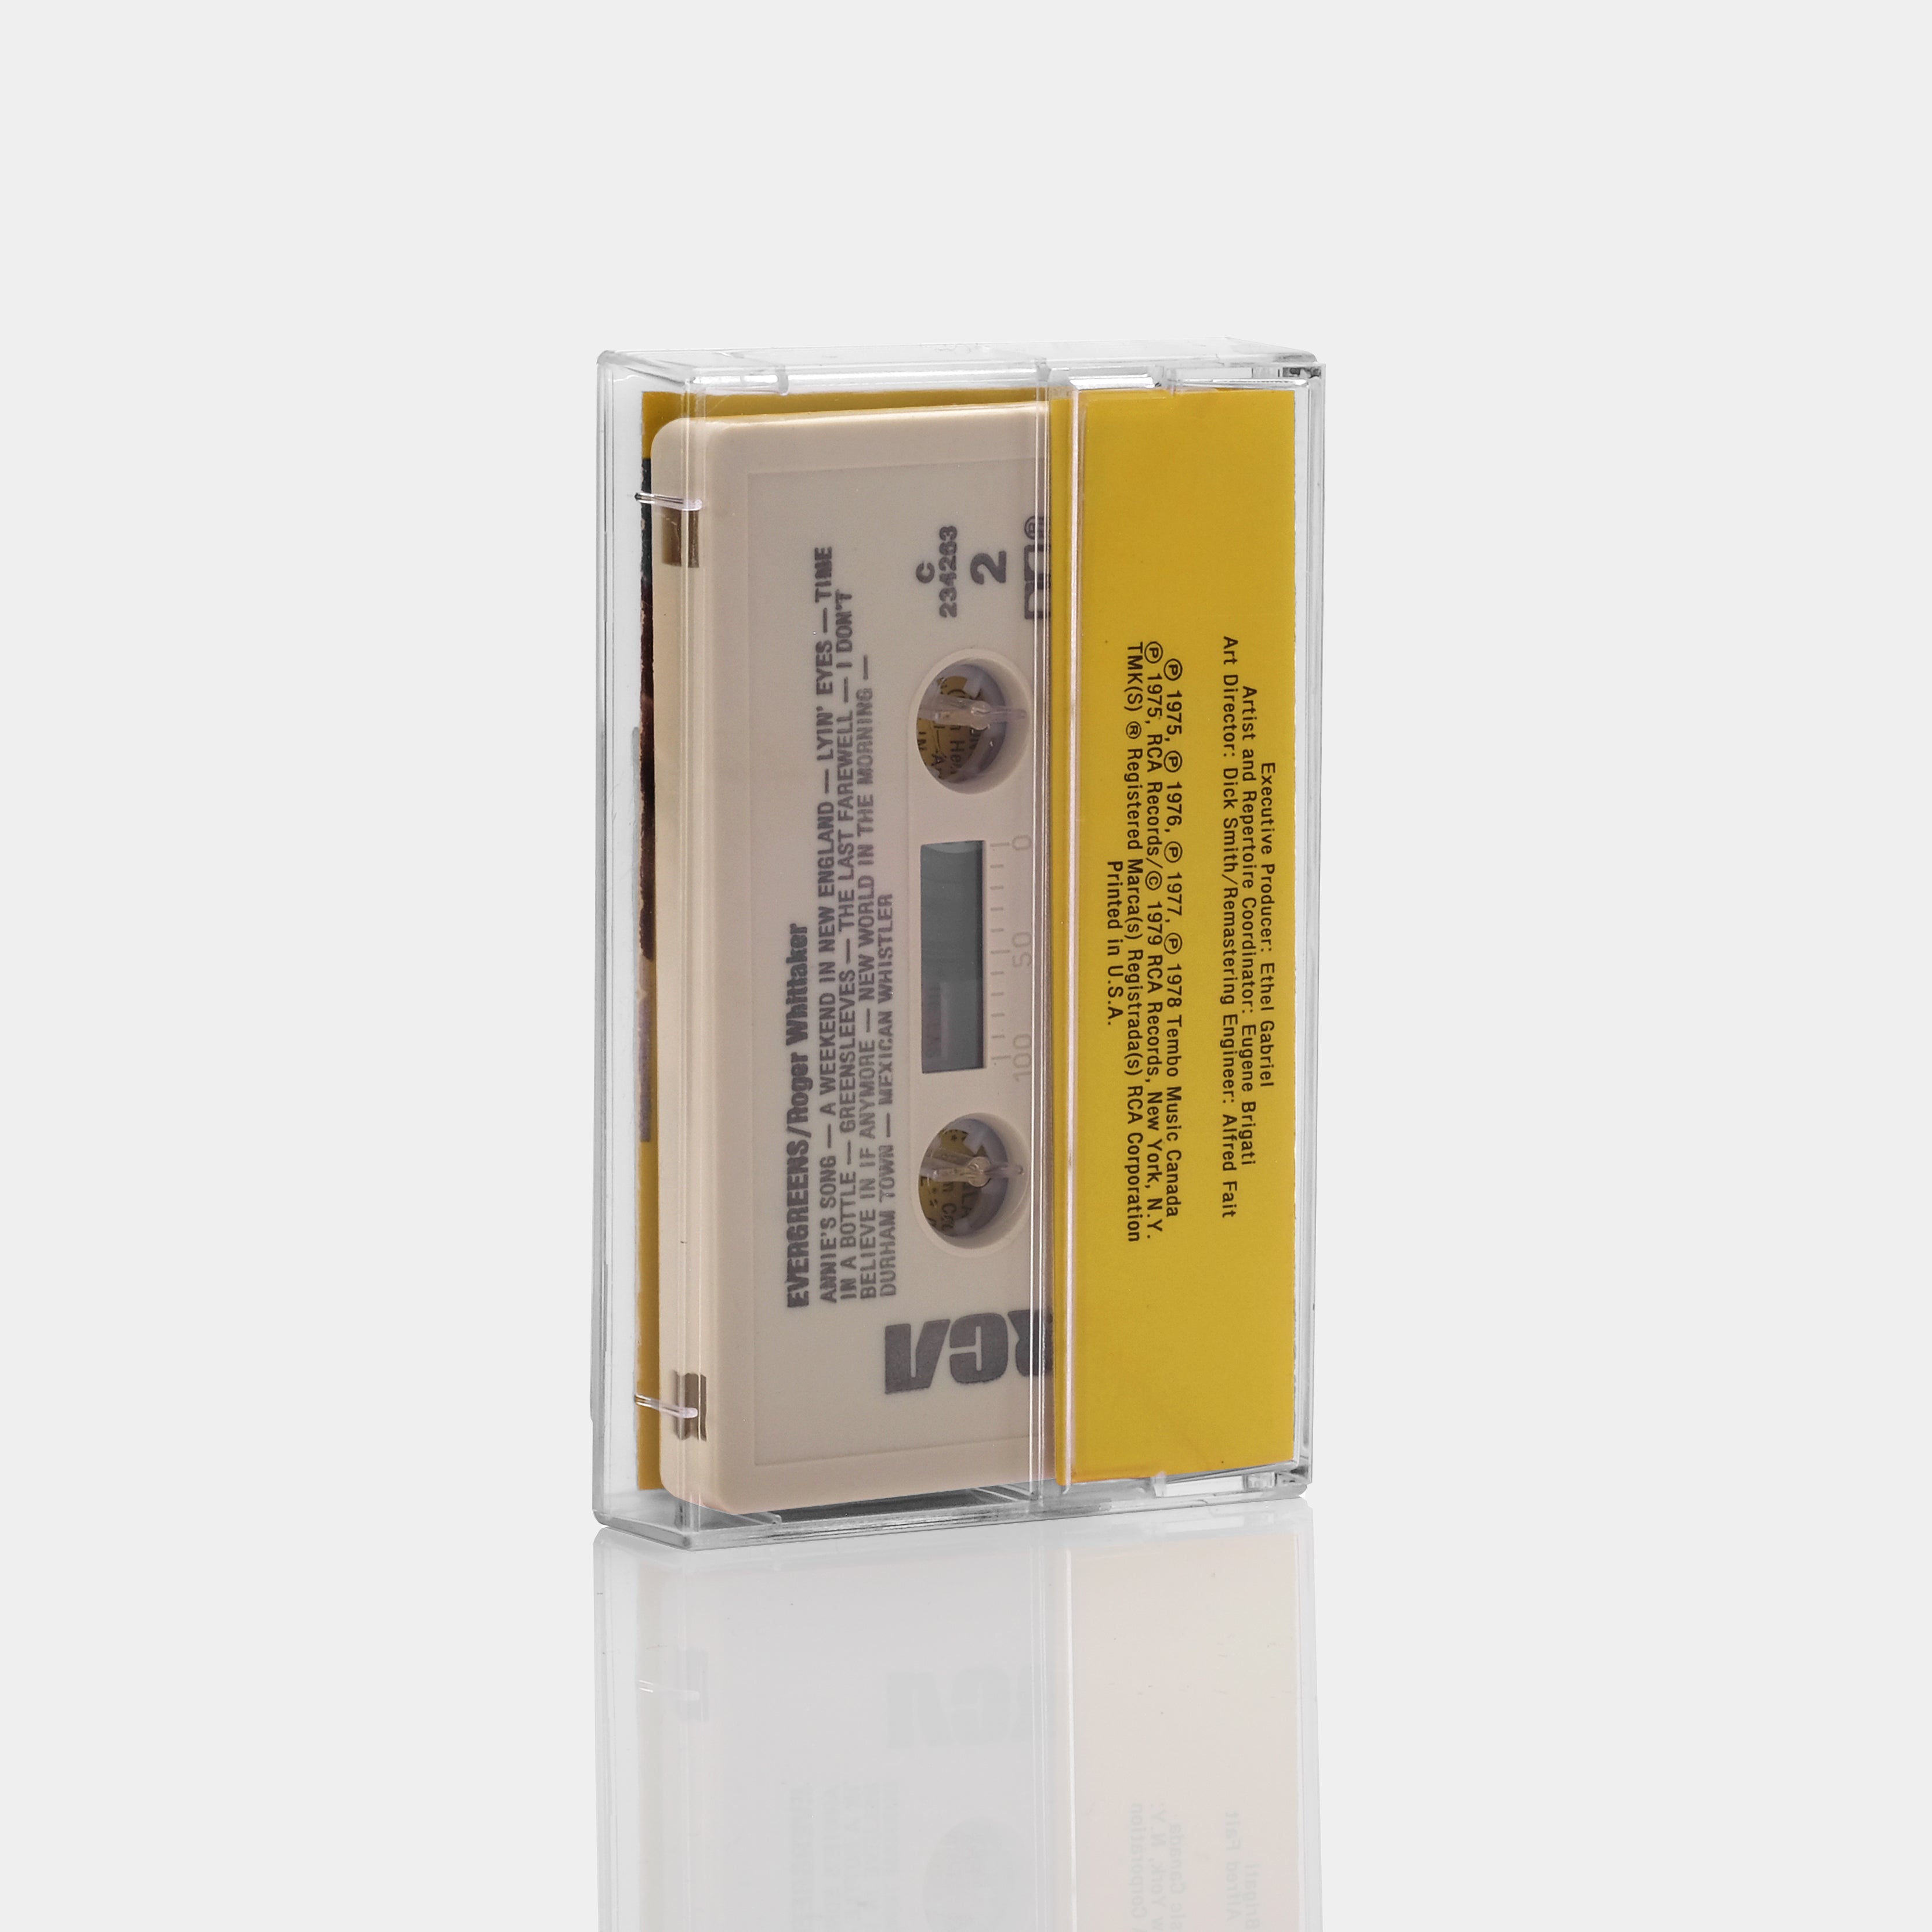 Roger Whittaker - Evergreens Cassette Tape